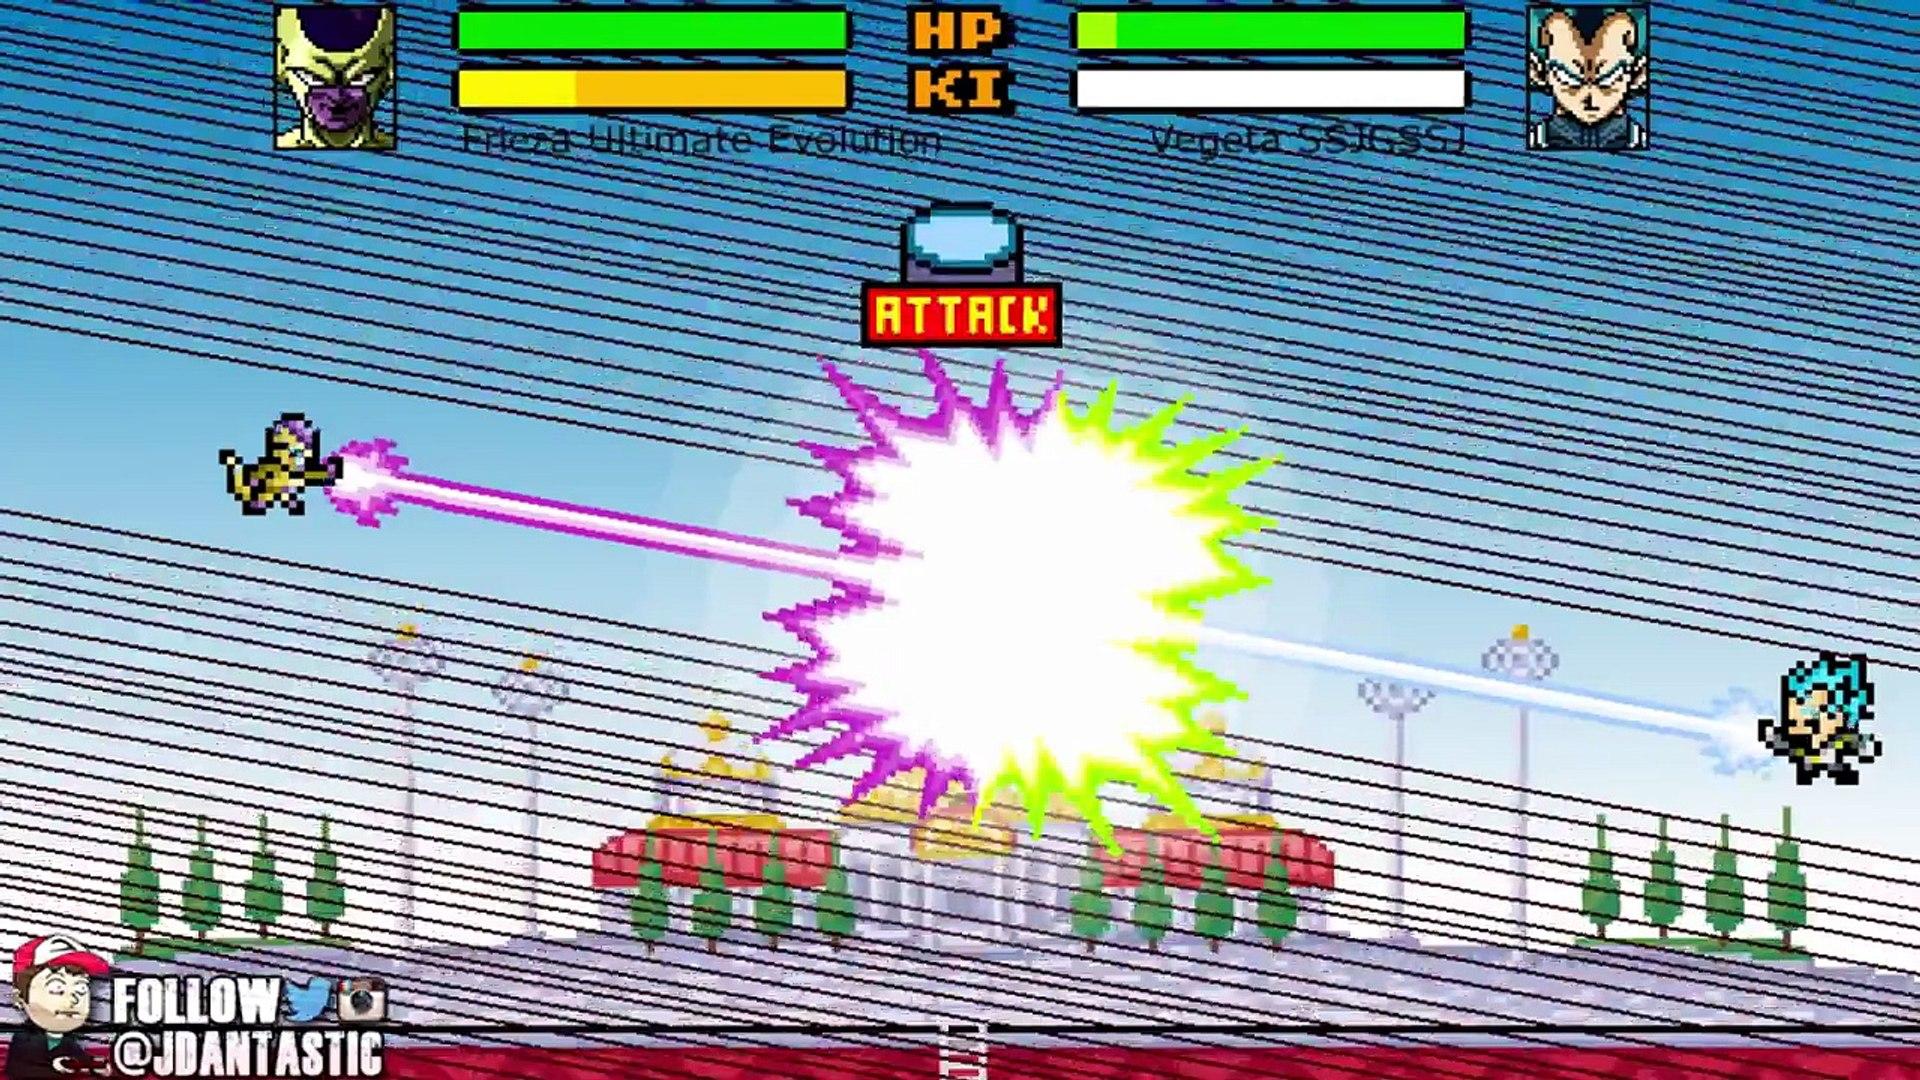 Dragon Ball Z Devolution: Super Saiyan God Super Saiyan Vegeta vs. Golden Frieza!